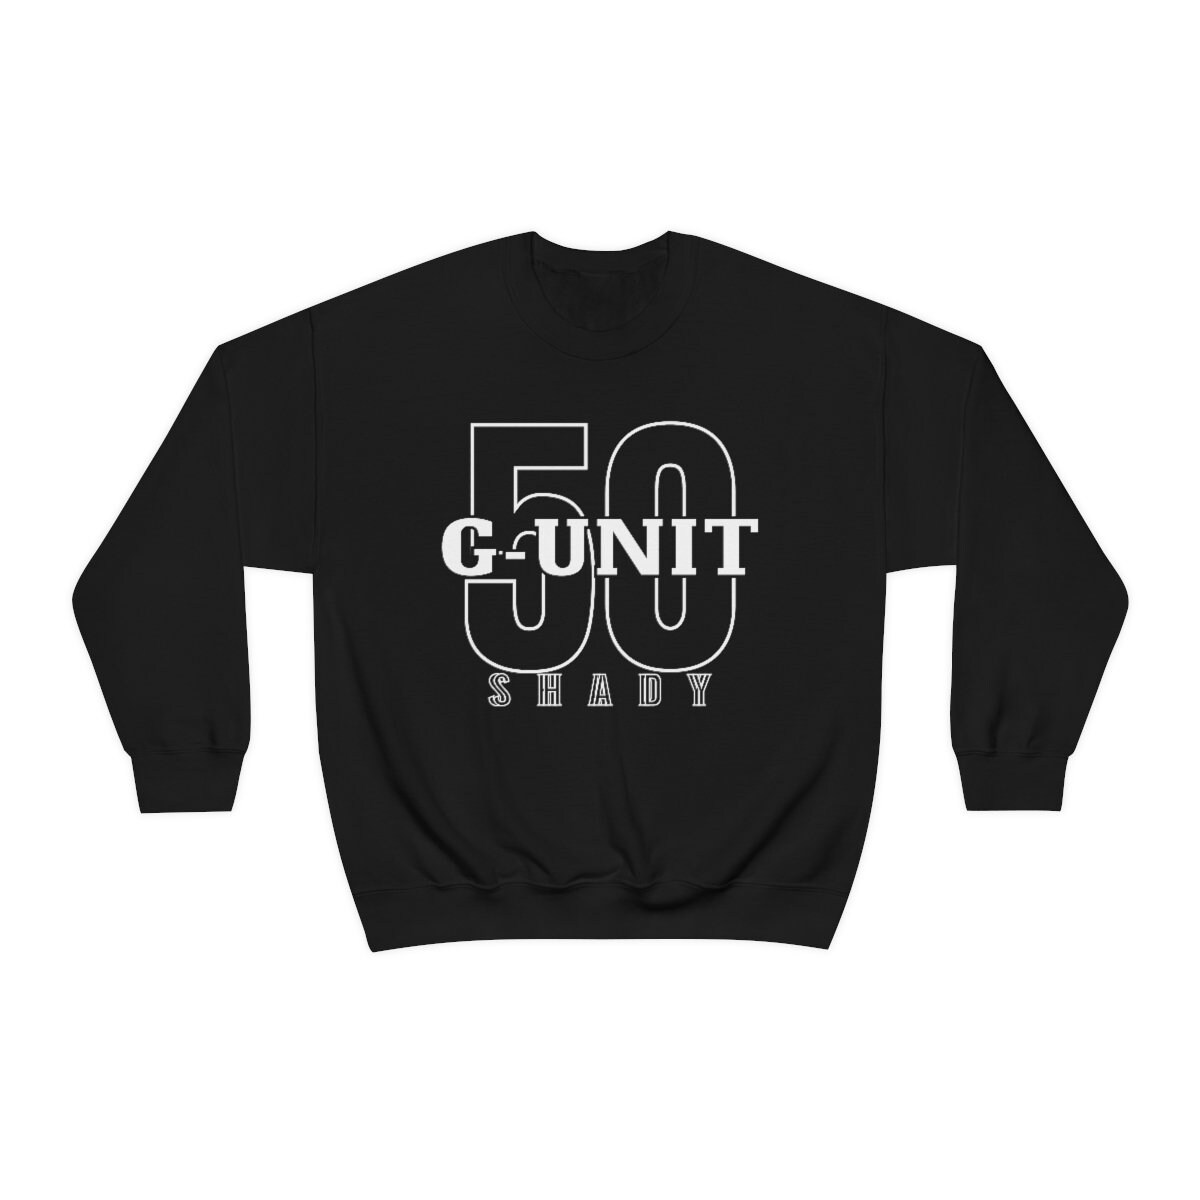 G-unit Sweater G-unit Shirt Eminem Shady 50 Cent T-shirt - Etsy